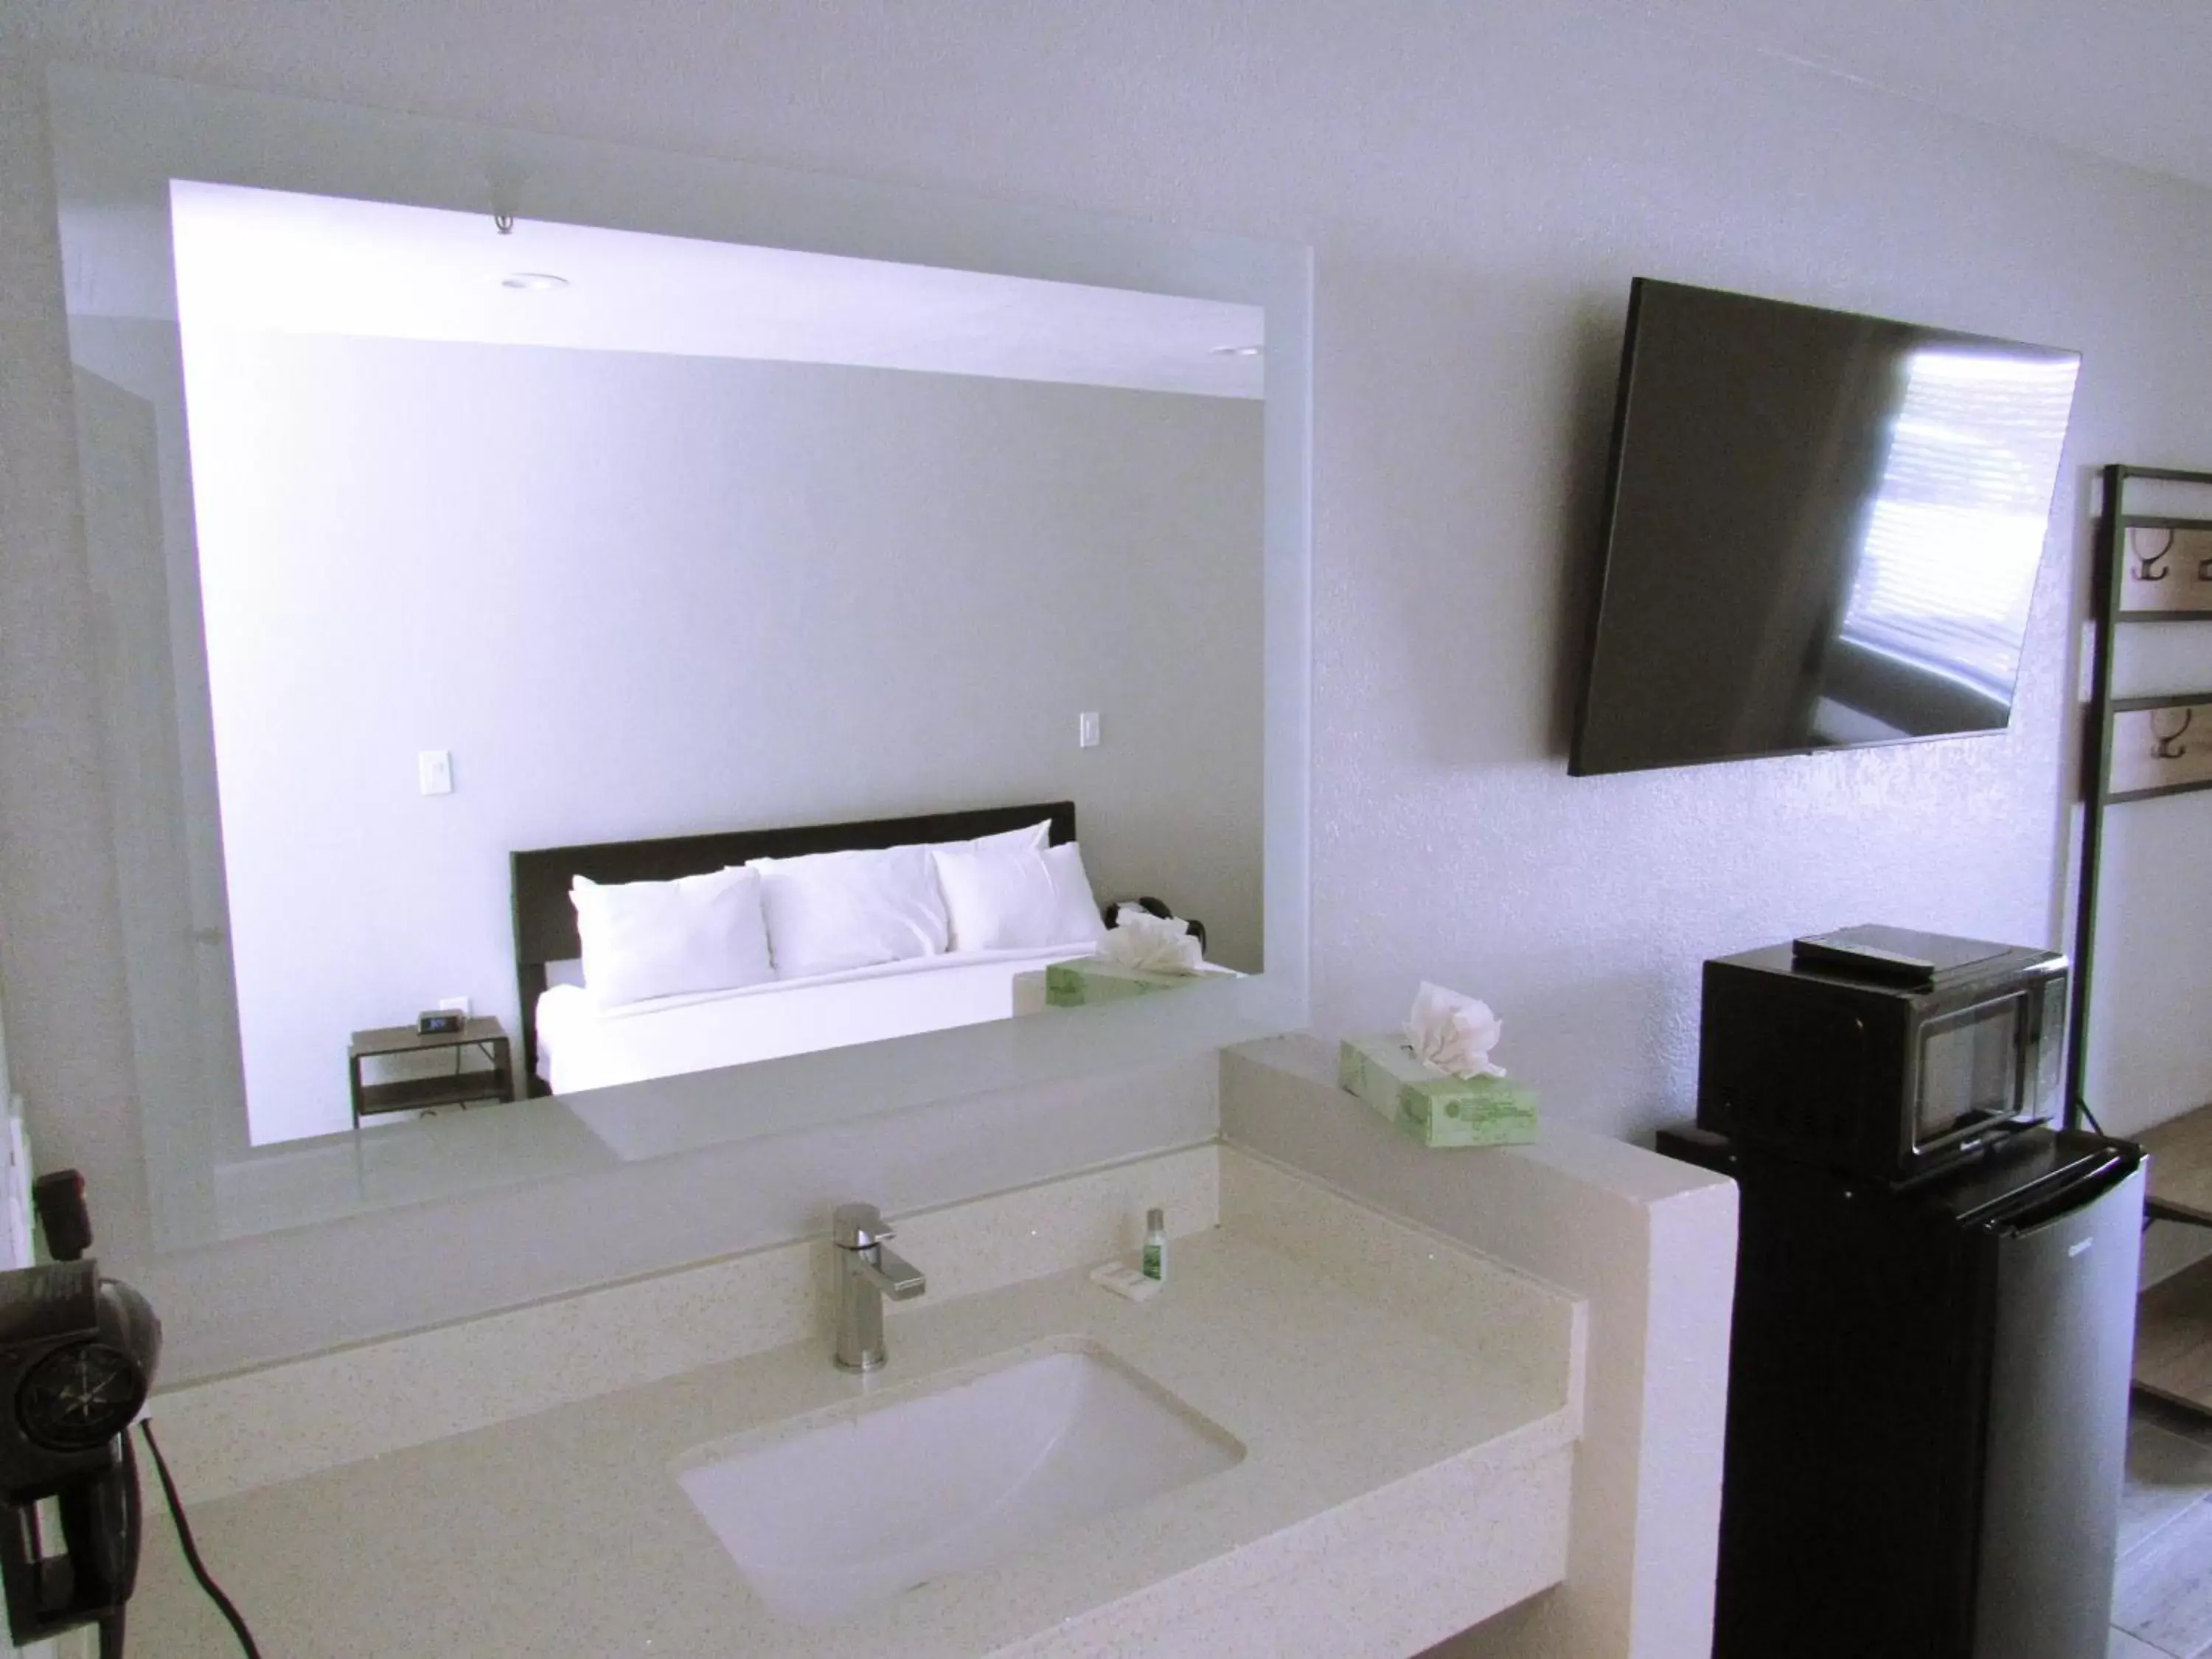 Bedroom, Bathroom in Capri Suites Anaheim